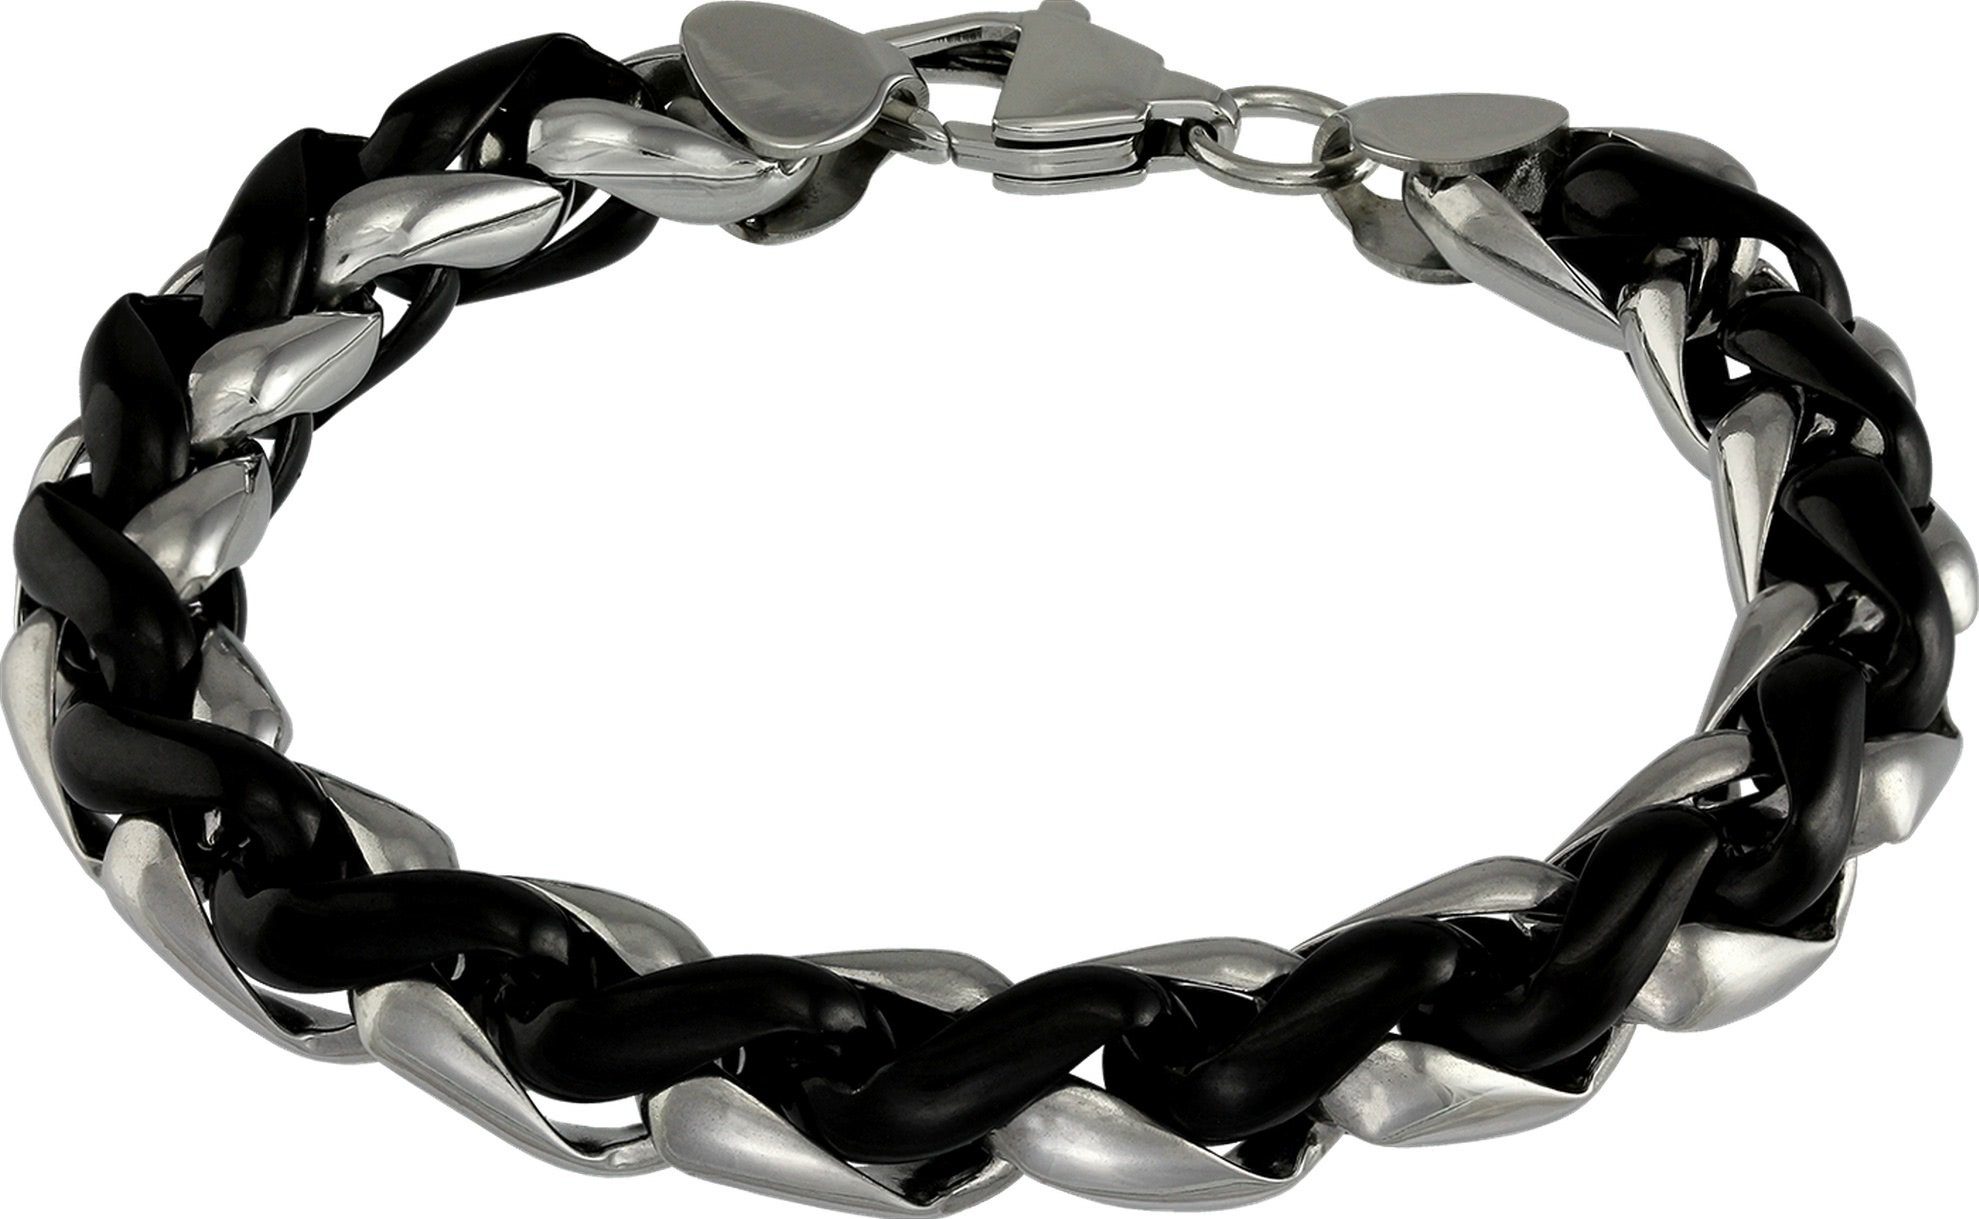 Edelstahl glänzend, schwarz Armband schwarz silber (Armband), Edelstahlarmband geflochten (geflochten) 21,5cm, Amello Amello ca. Armband